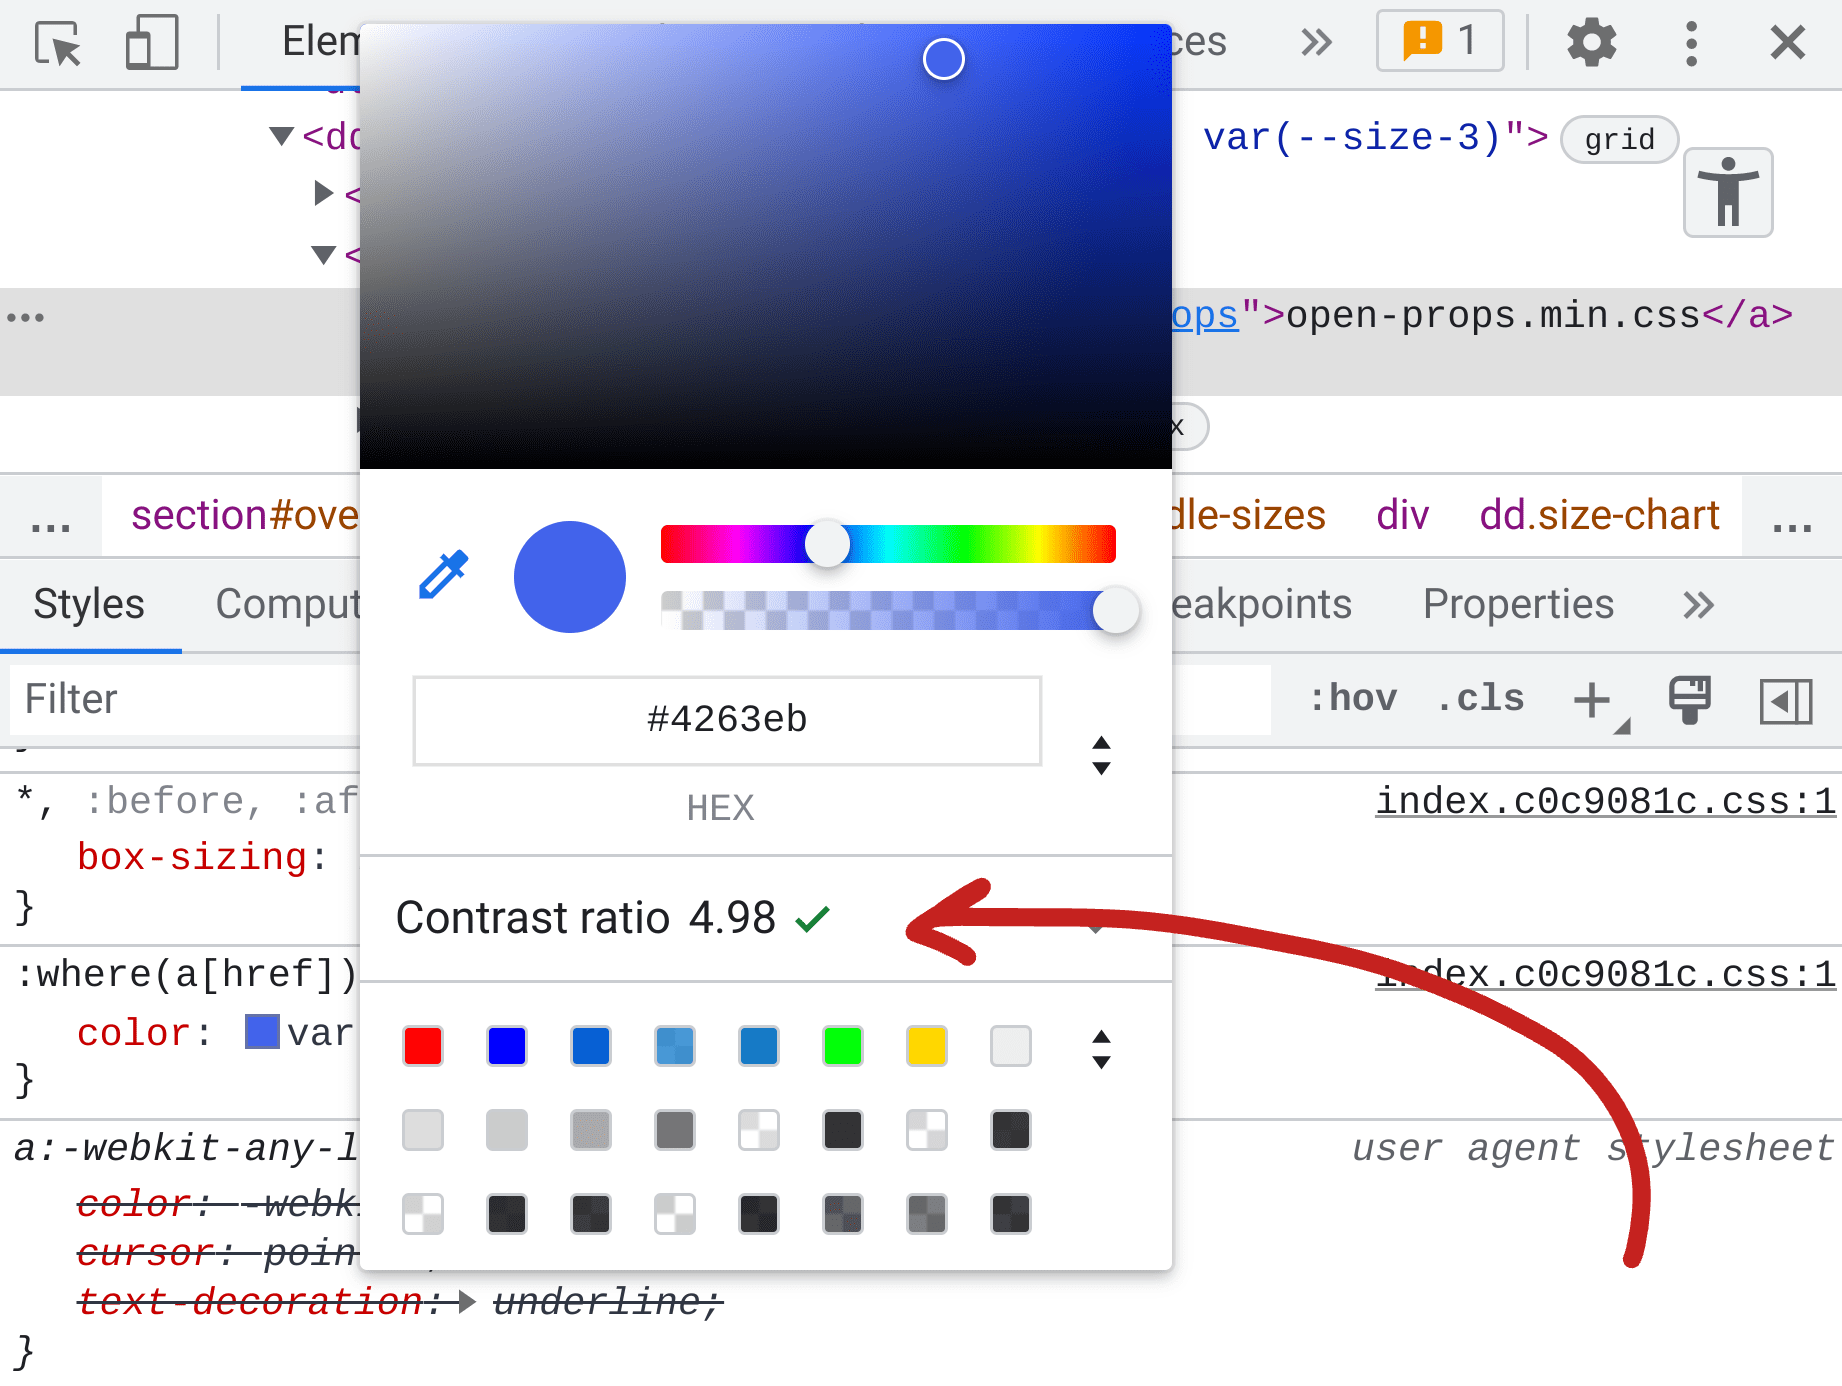 開發人員工具「Elements」面板的螢幕截圖，在樣式中會顯示顏色挑選器，中間部分則回報色彩的對比度為 4.98。